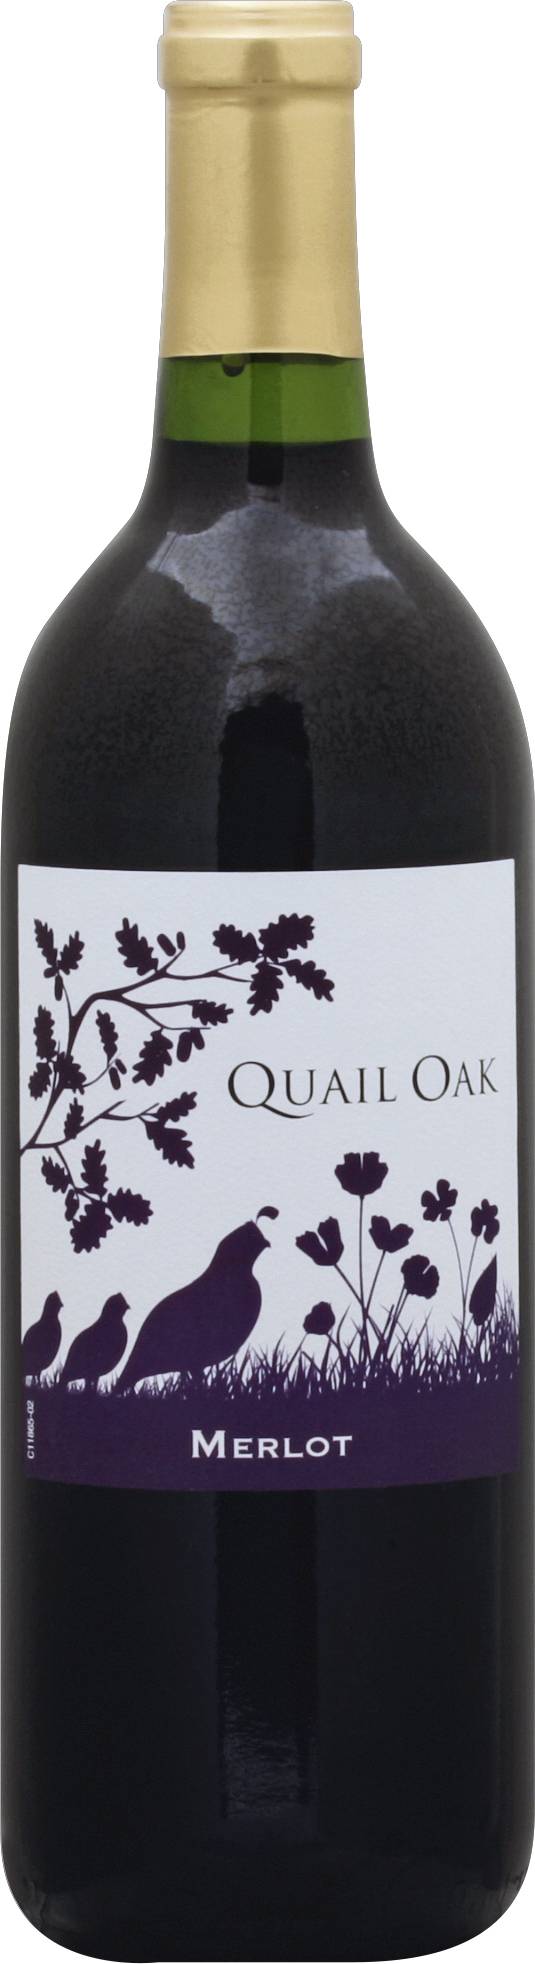 Quail Oak California Merlot Wine (750 ml)